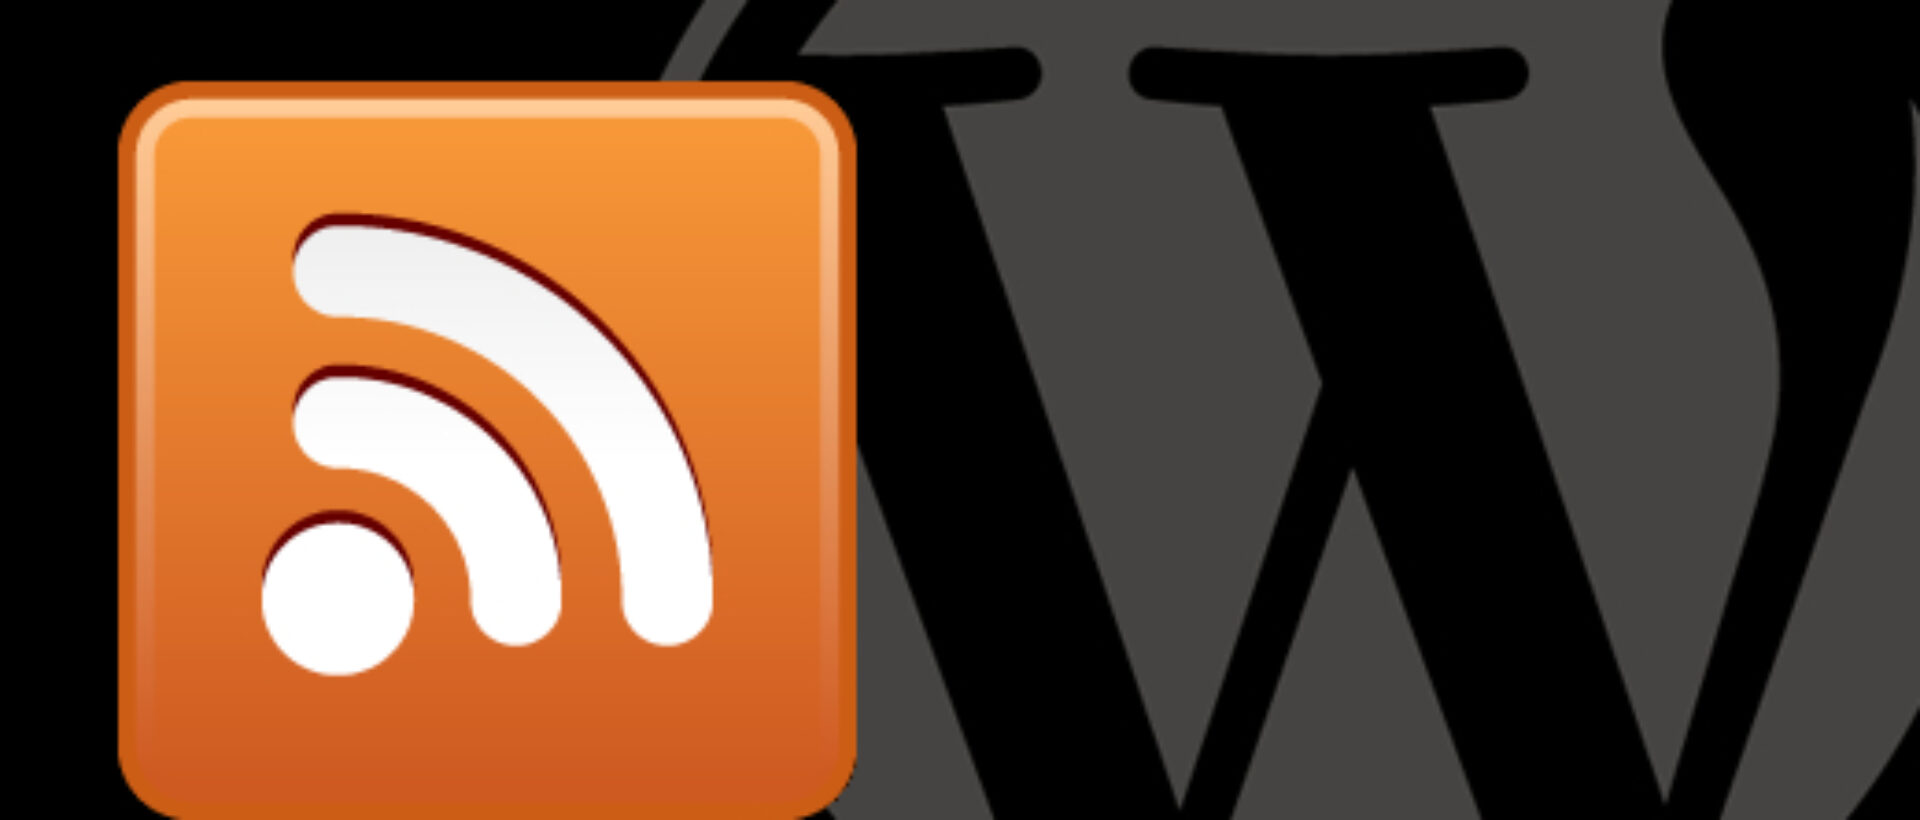 RSS und Wordpress - eine gute Kombination